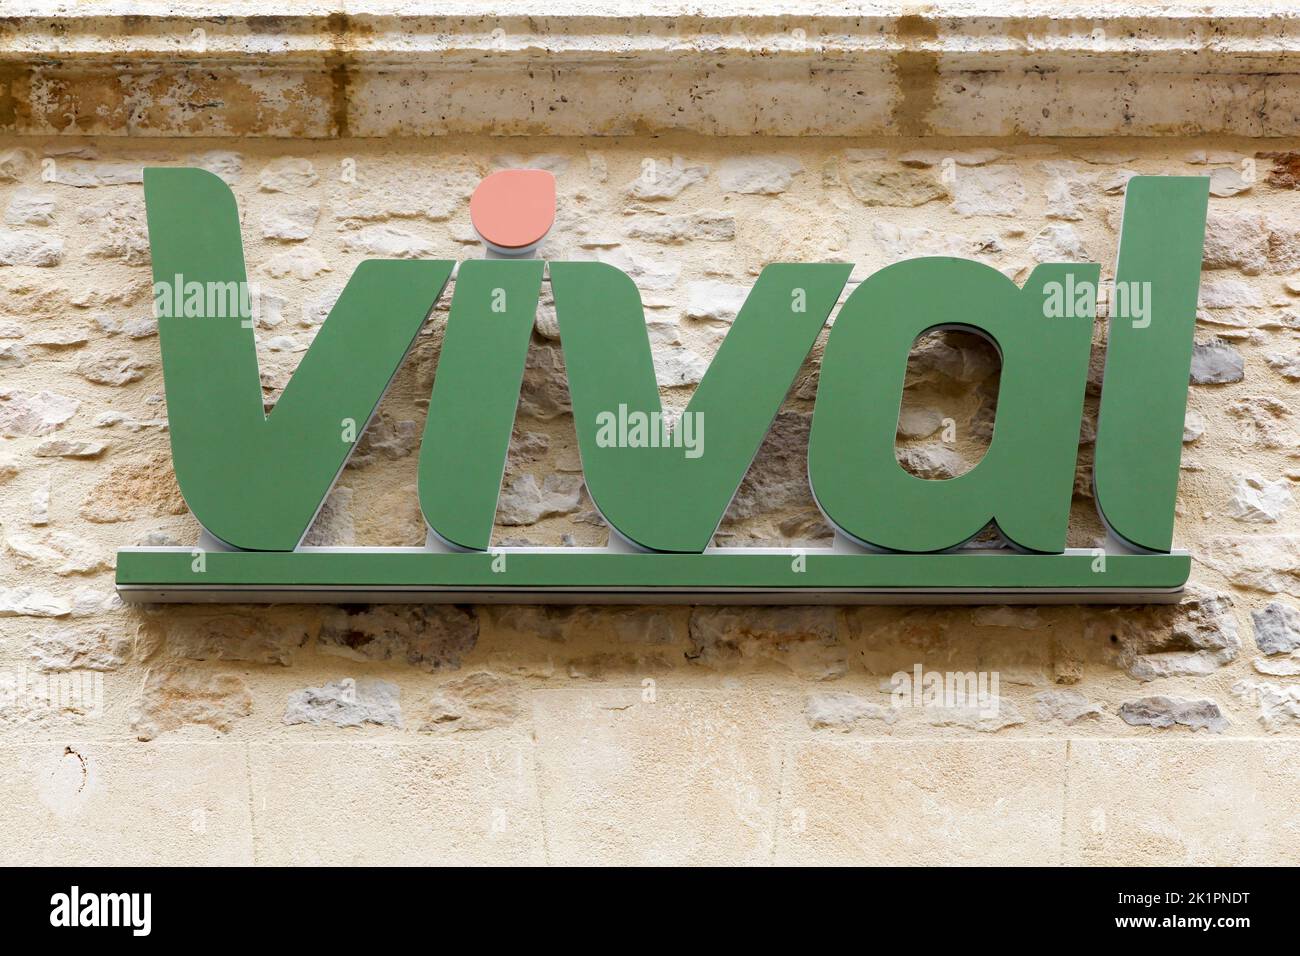 Villefranche du Périgord, Francia - 26 de junio de 2021: Logo vival en una pared. Vival es una tienda de conveniencia francesa perteneciente al Grupo Casino Foto de stock